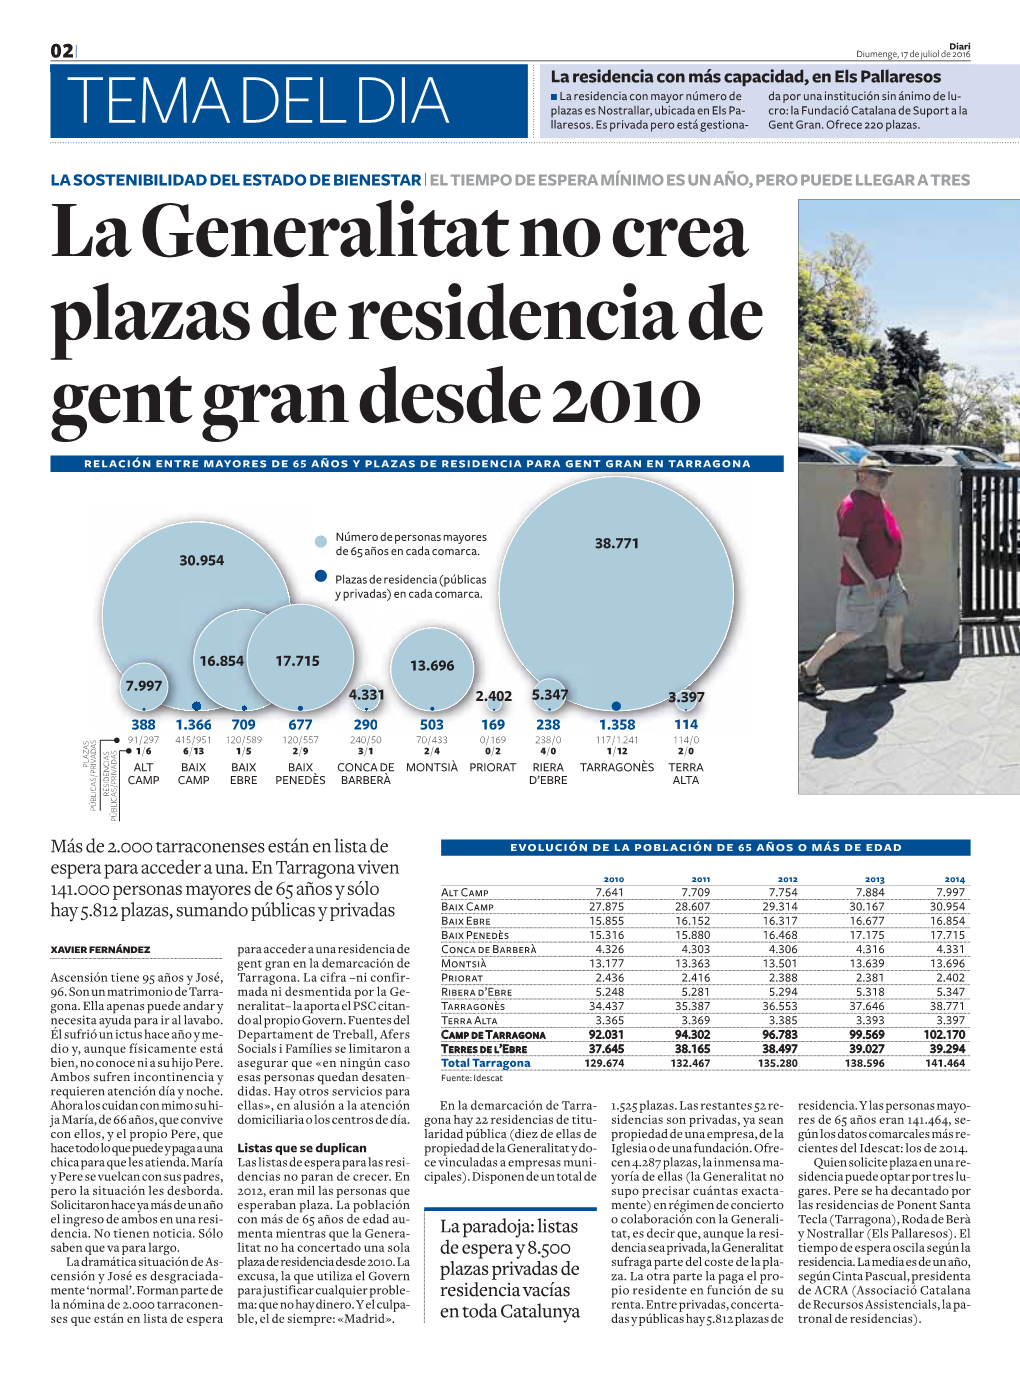 La Generalitat No Crea Plazas De Residencia De Gent Gran Desde 2010